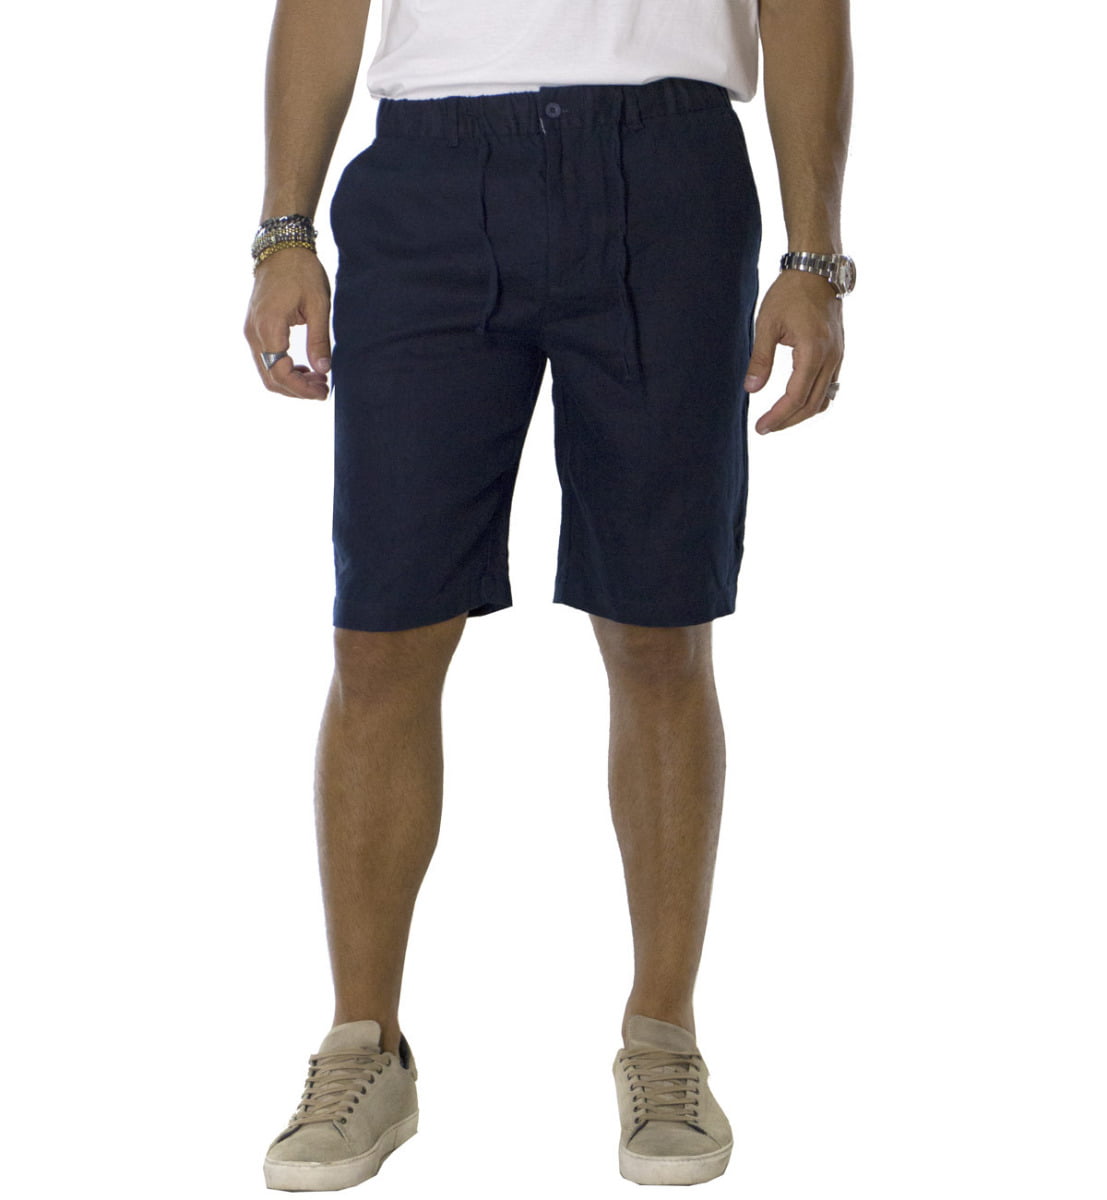 Bermuda uomo in lino modello tasca america regular fit con laccio in vita